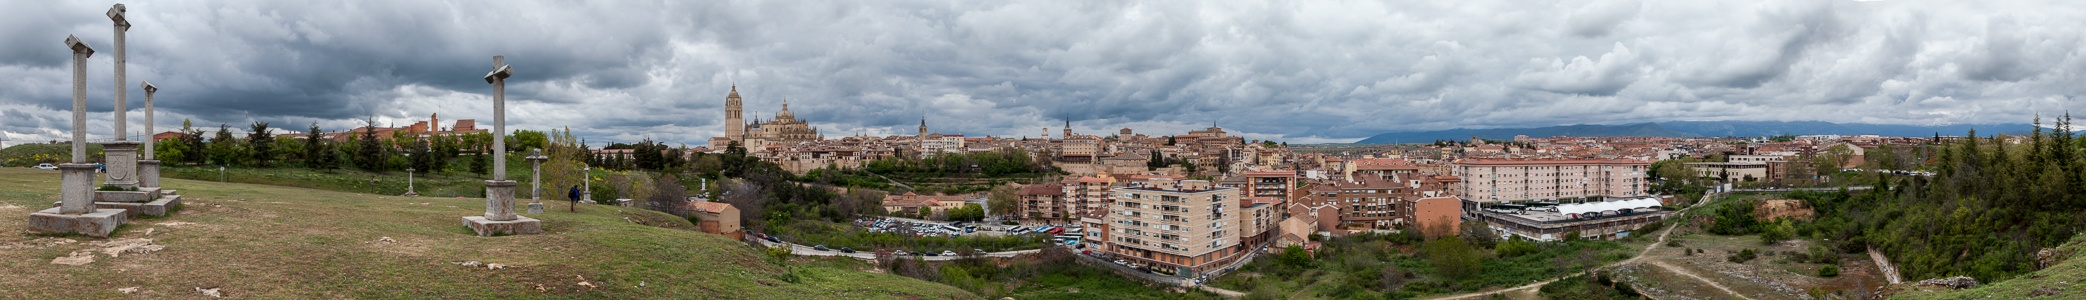 Altos de la Piedad, Centro Histórico mit Catedral de Santa María de Segovia, Römisches Aquädukt